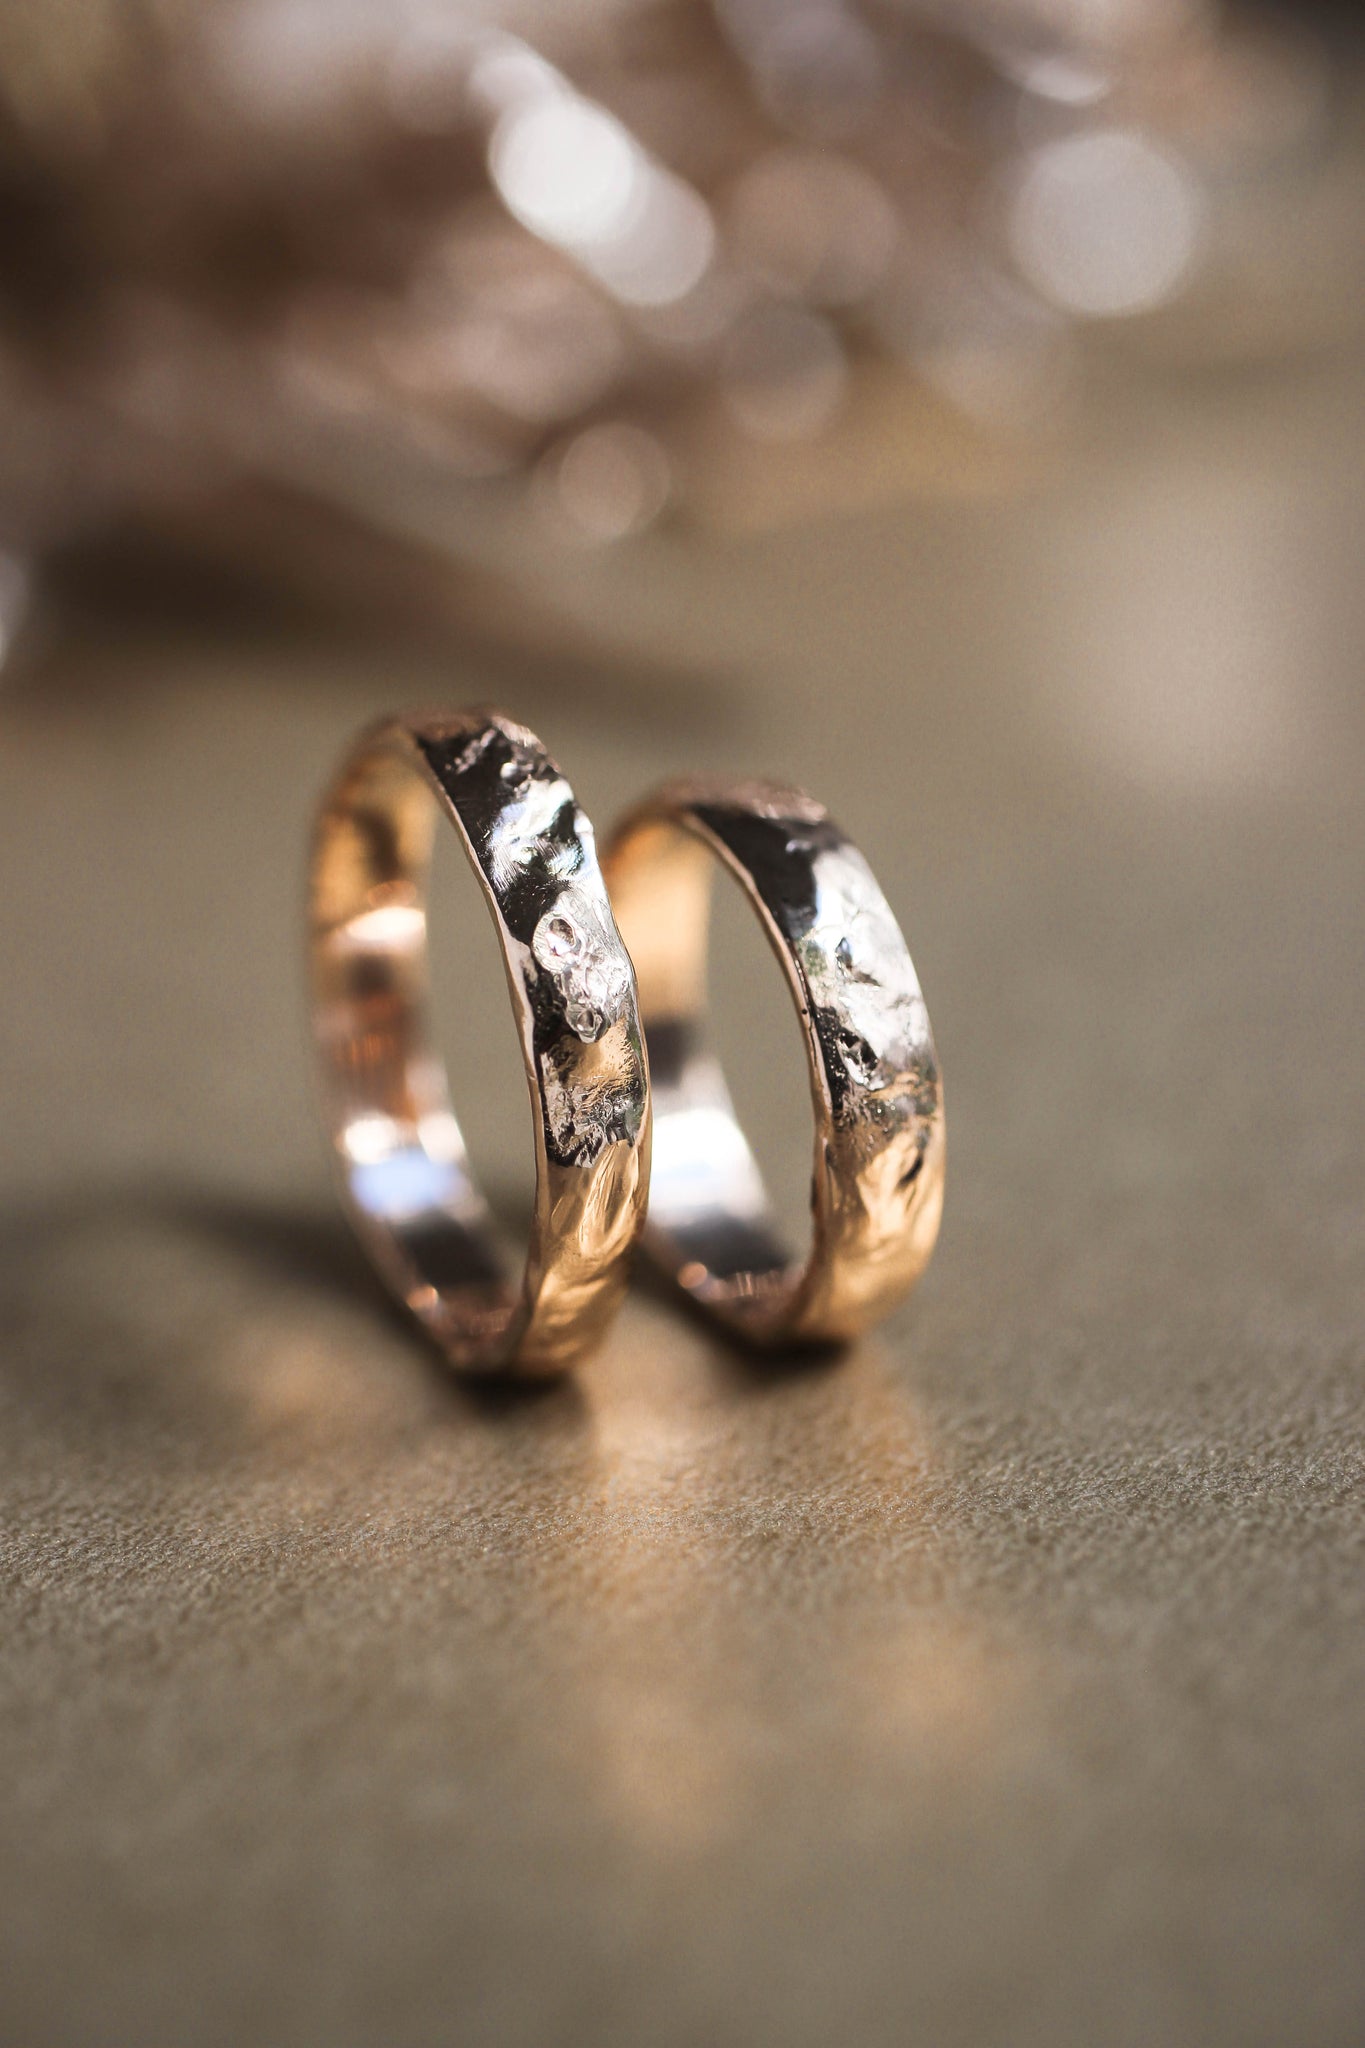 Textured wedding band, unisex ring - Eden Garden Jewelry™